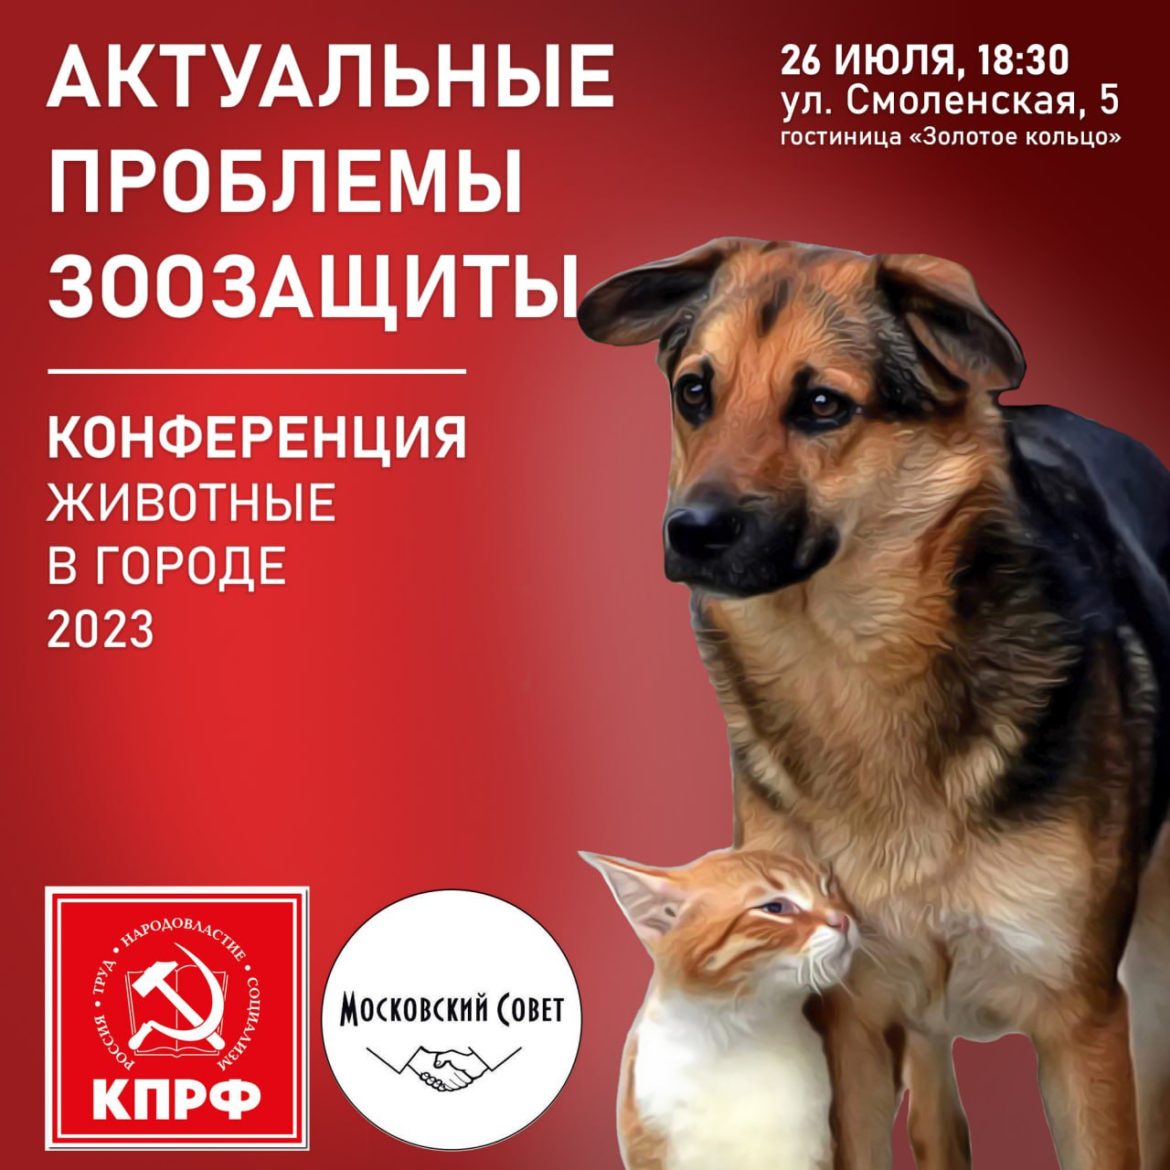 26 июля в 18.30 в Москве состоится общегородская конференция «Животные в городе-2023: актуальные проблемы зоозащиты»